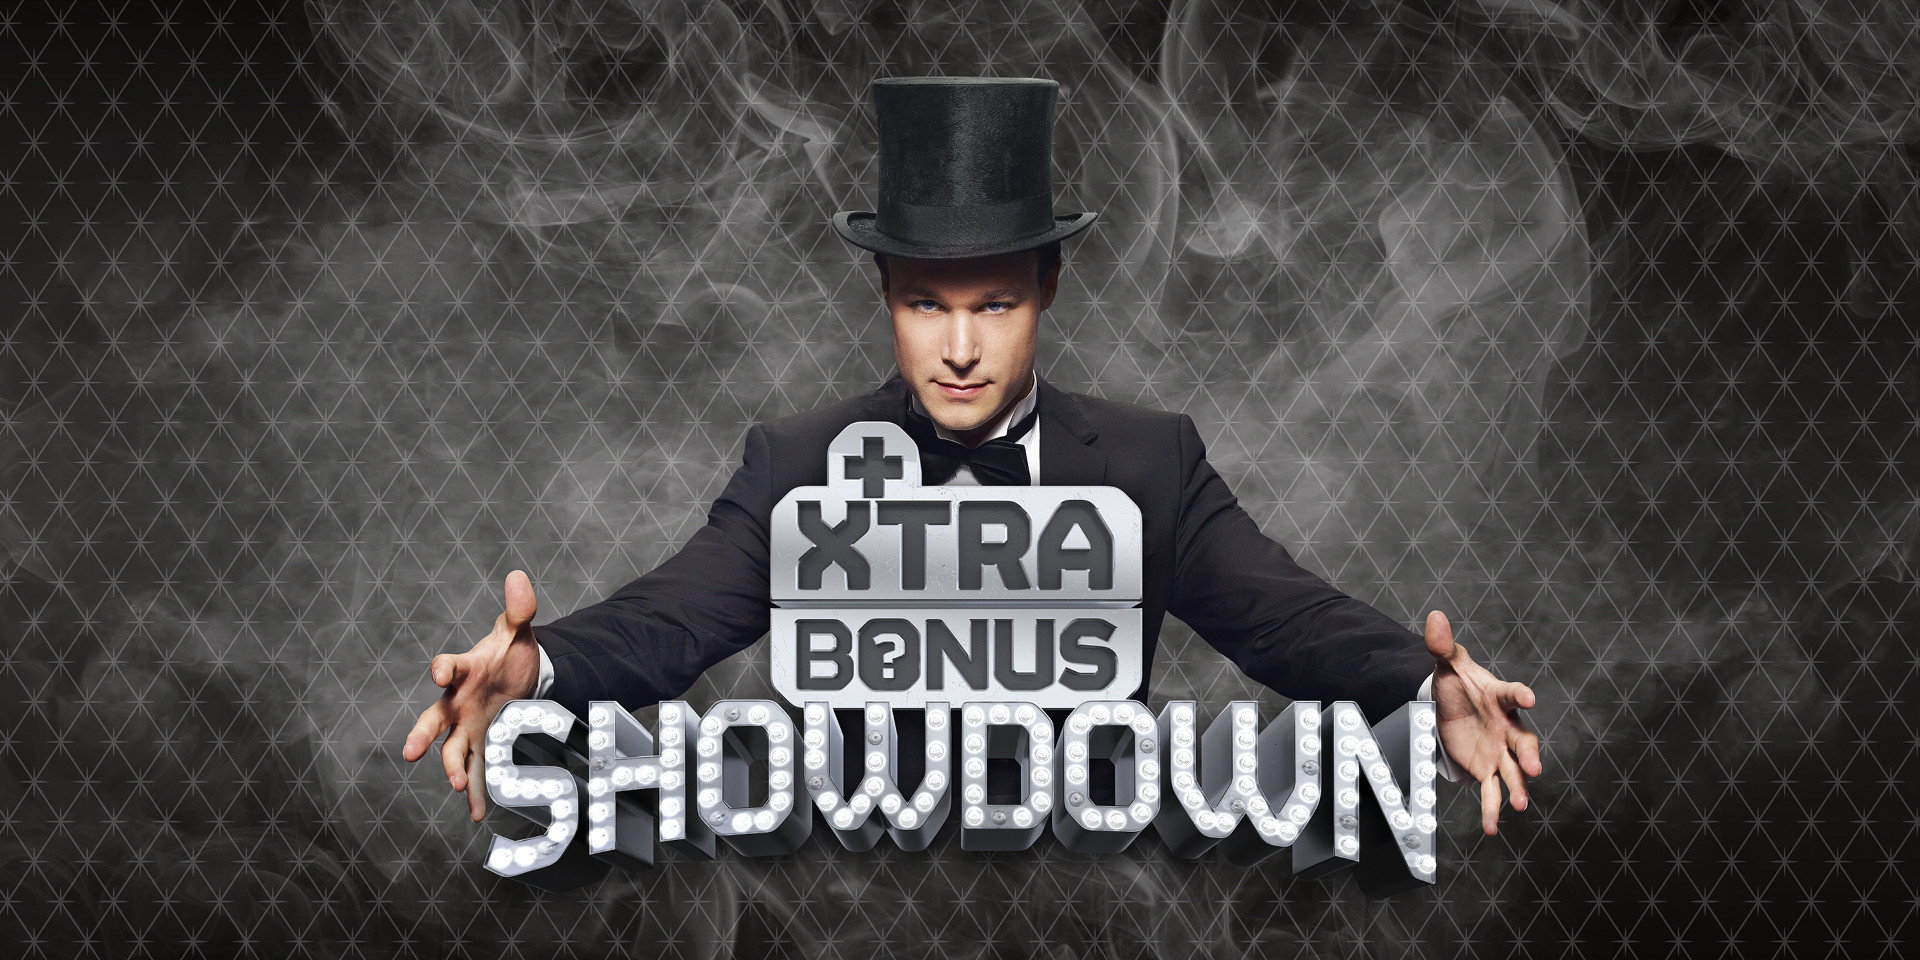 It’s Xtra Bonus Showdown time!